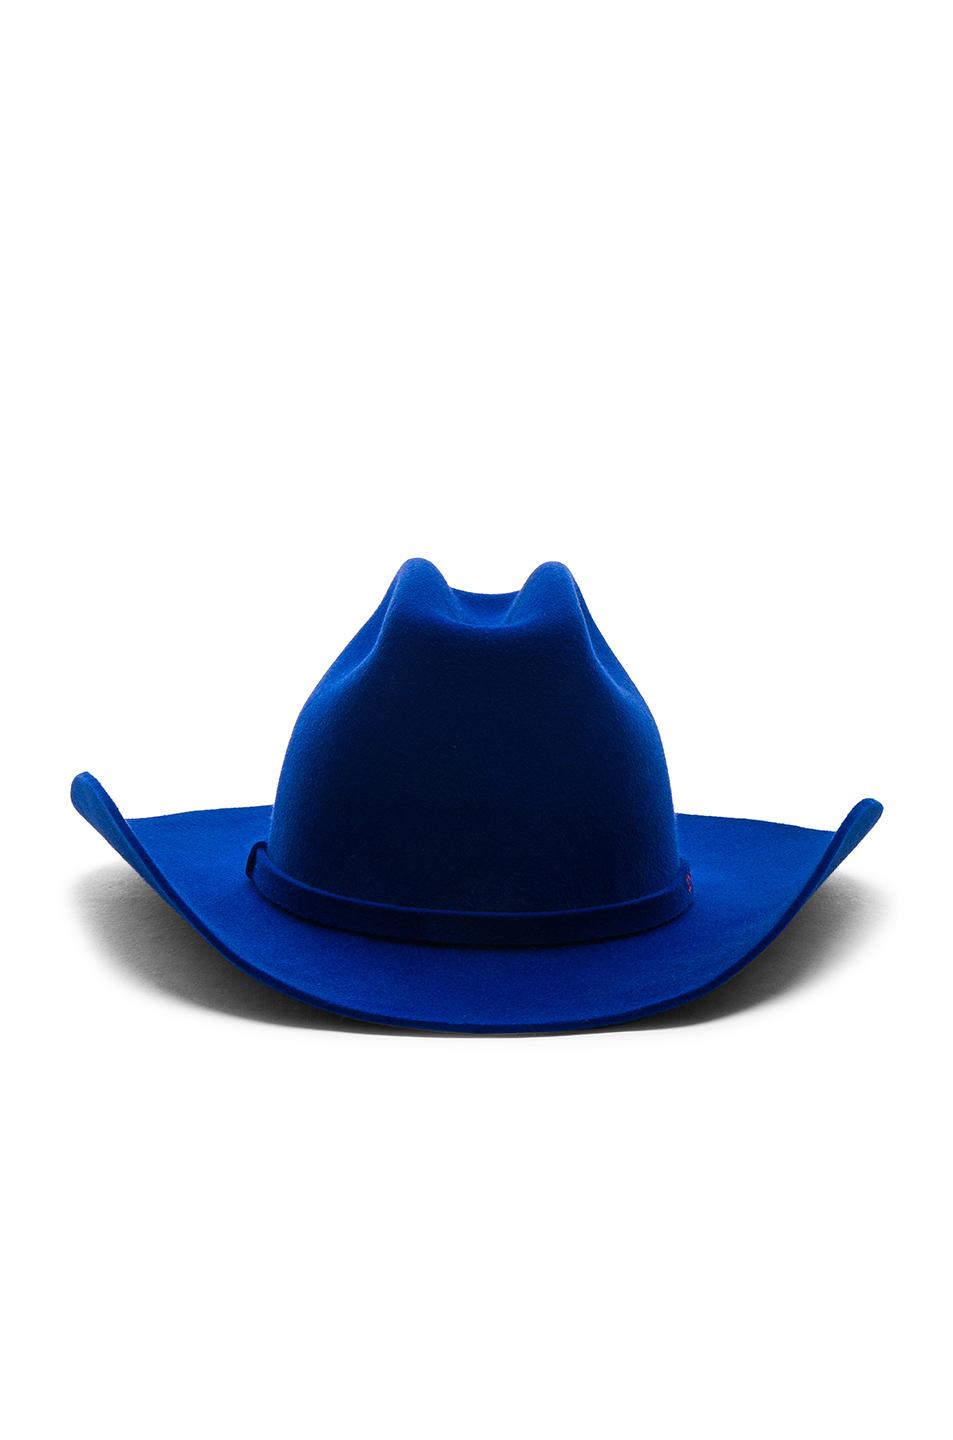 CALVIN KLEIN 205W39NYC Felt Cowboy Hat in Electric Blue (Blue) | Lyst